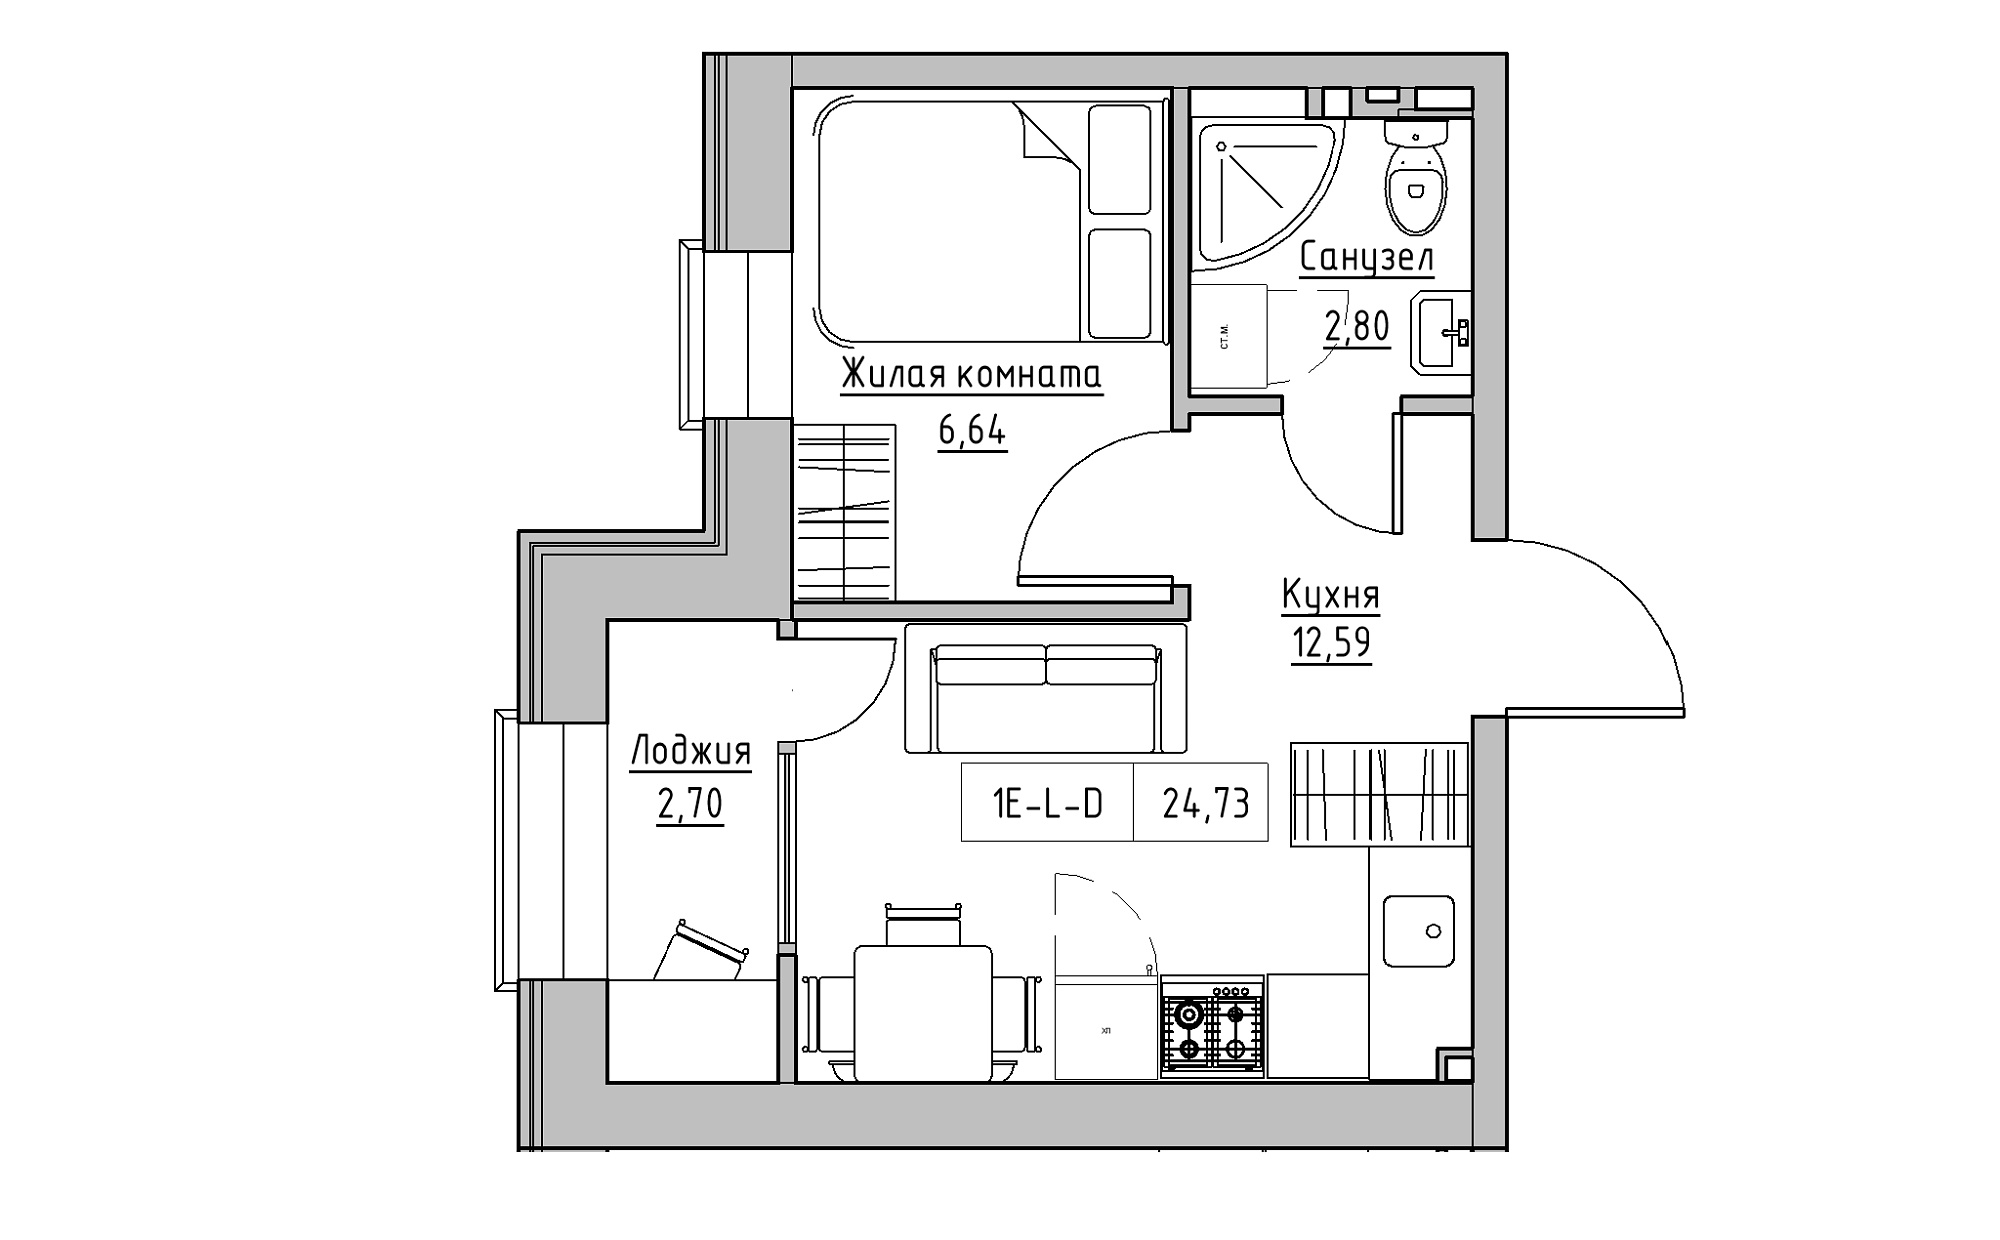 Планування 1-к квартира площею 24.73м2, KS-022-04/0013.